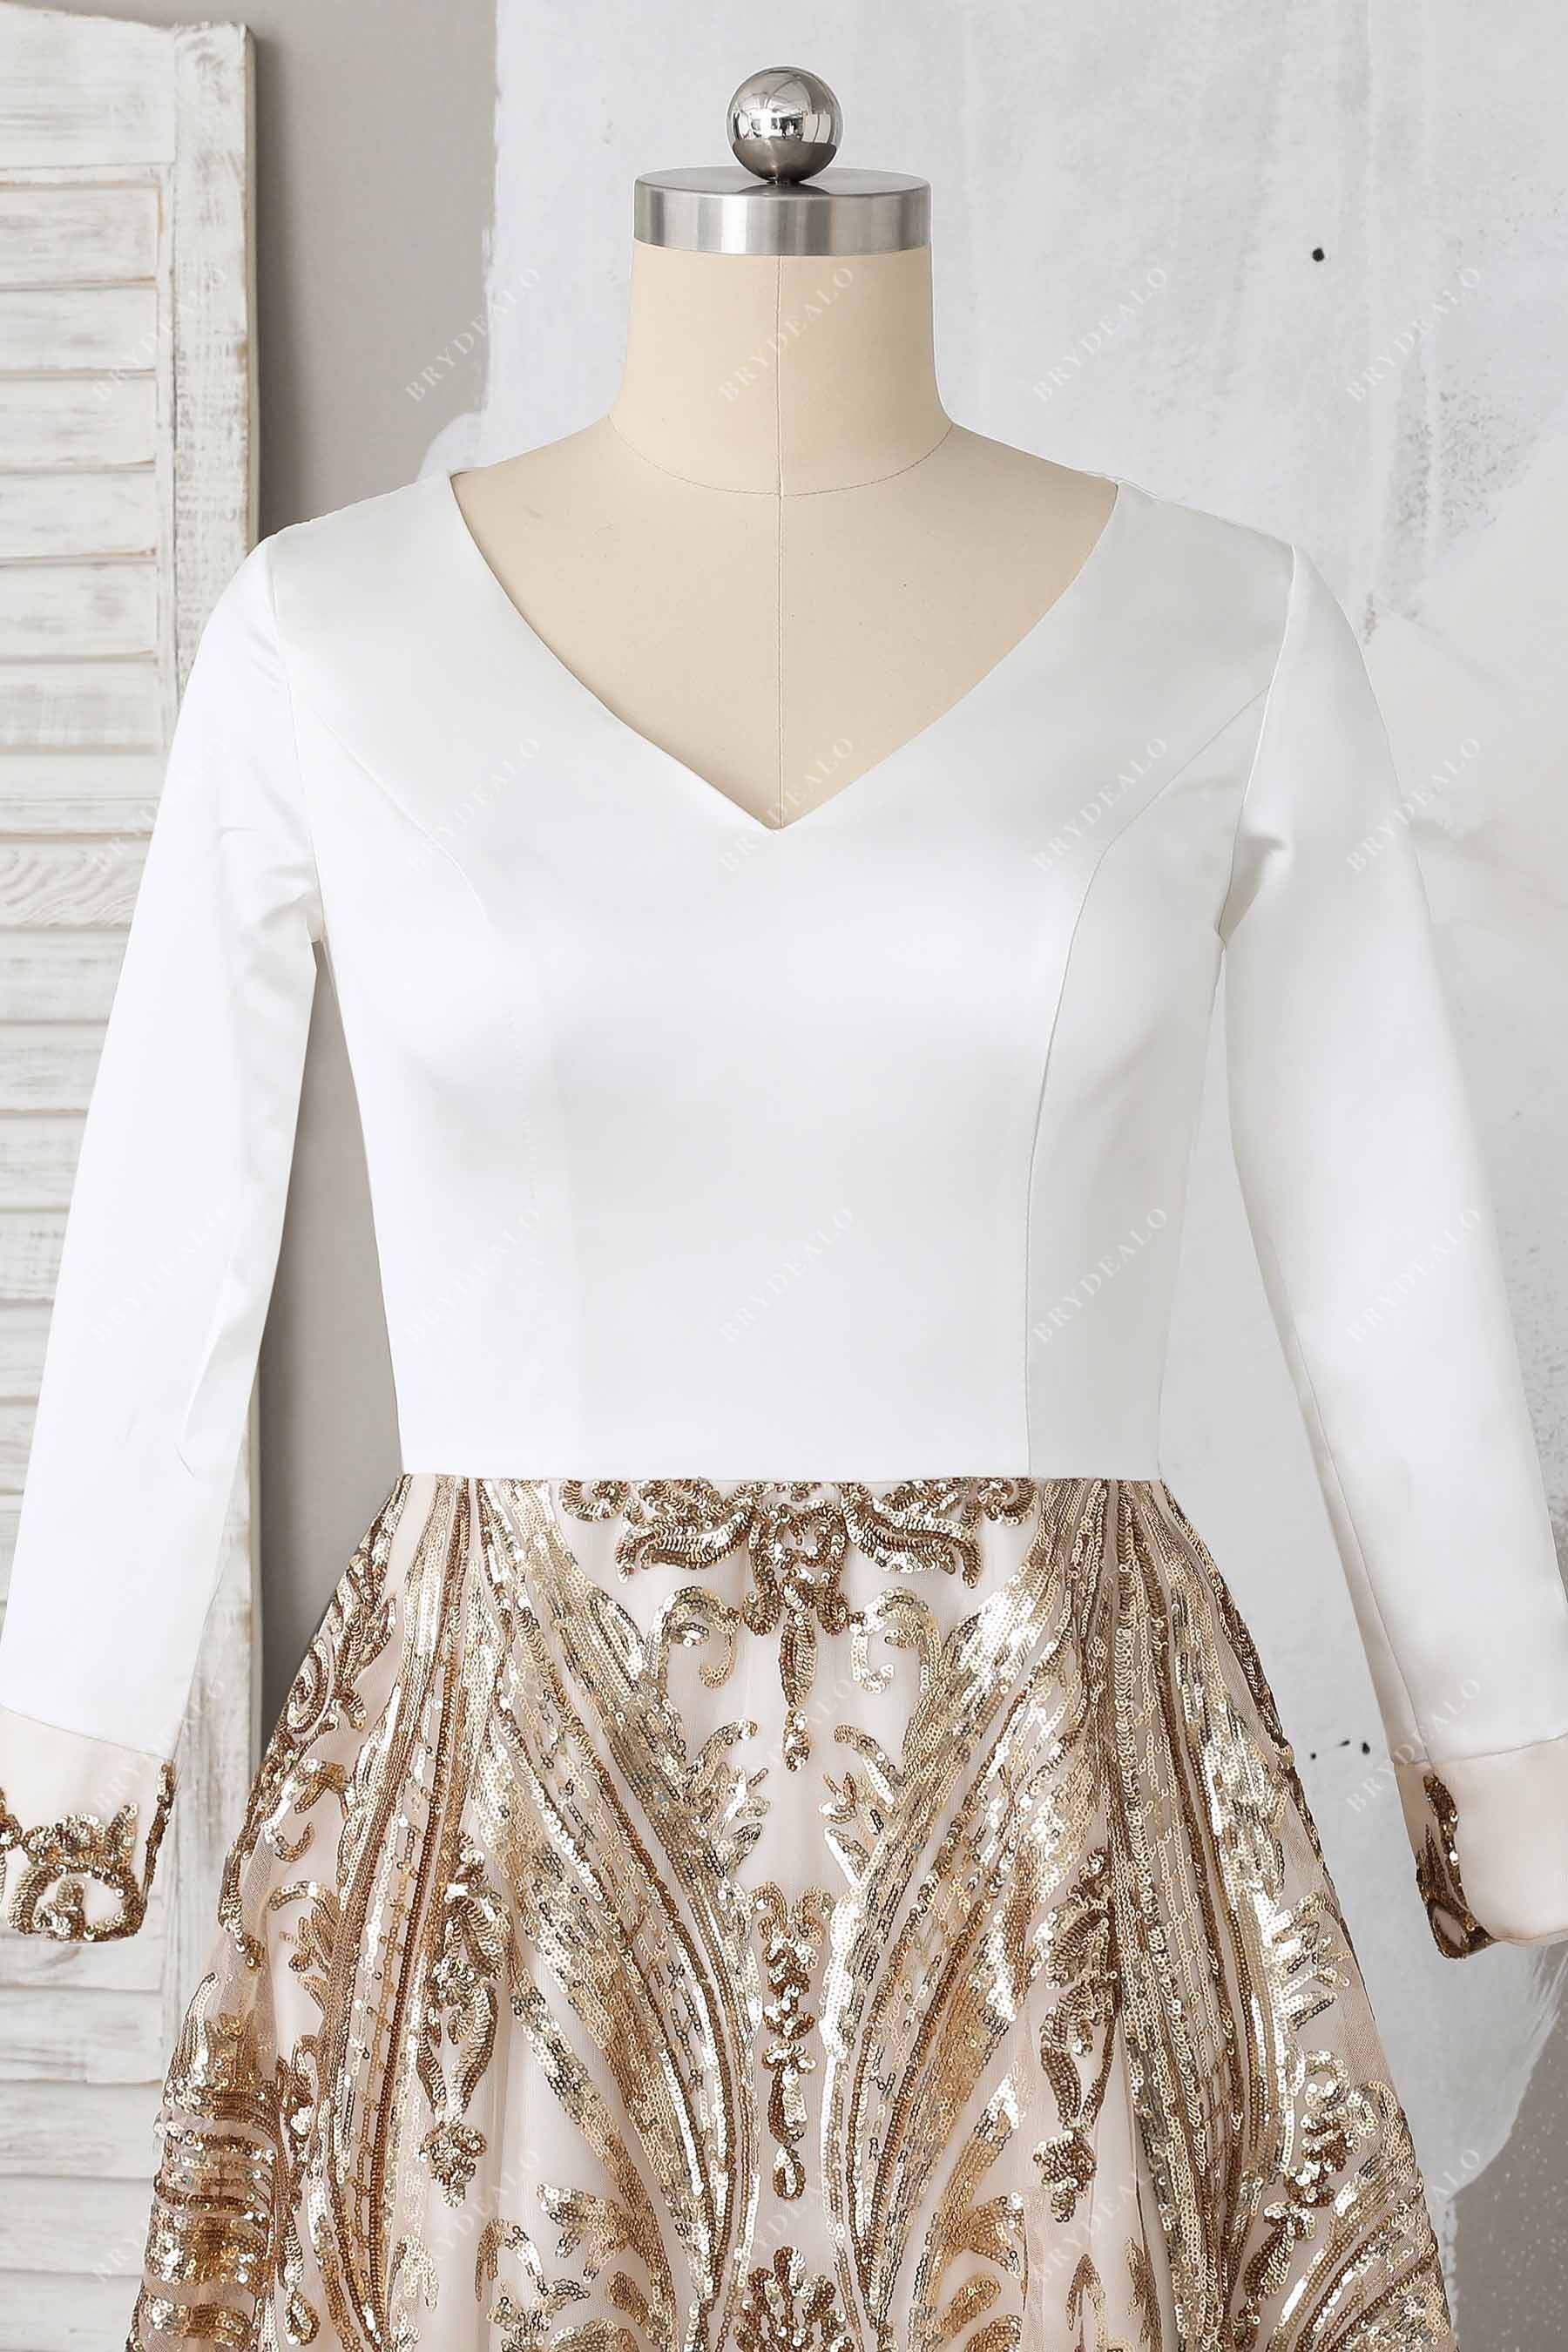 V-neck long sleeve white satin formal gown